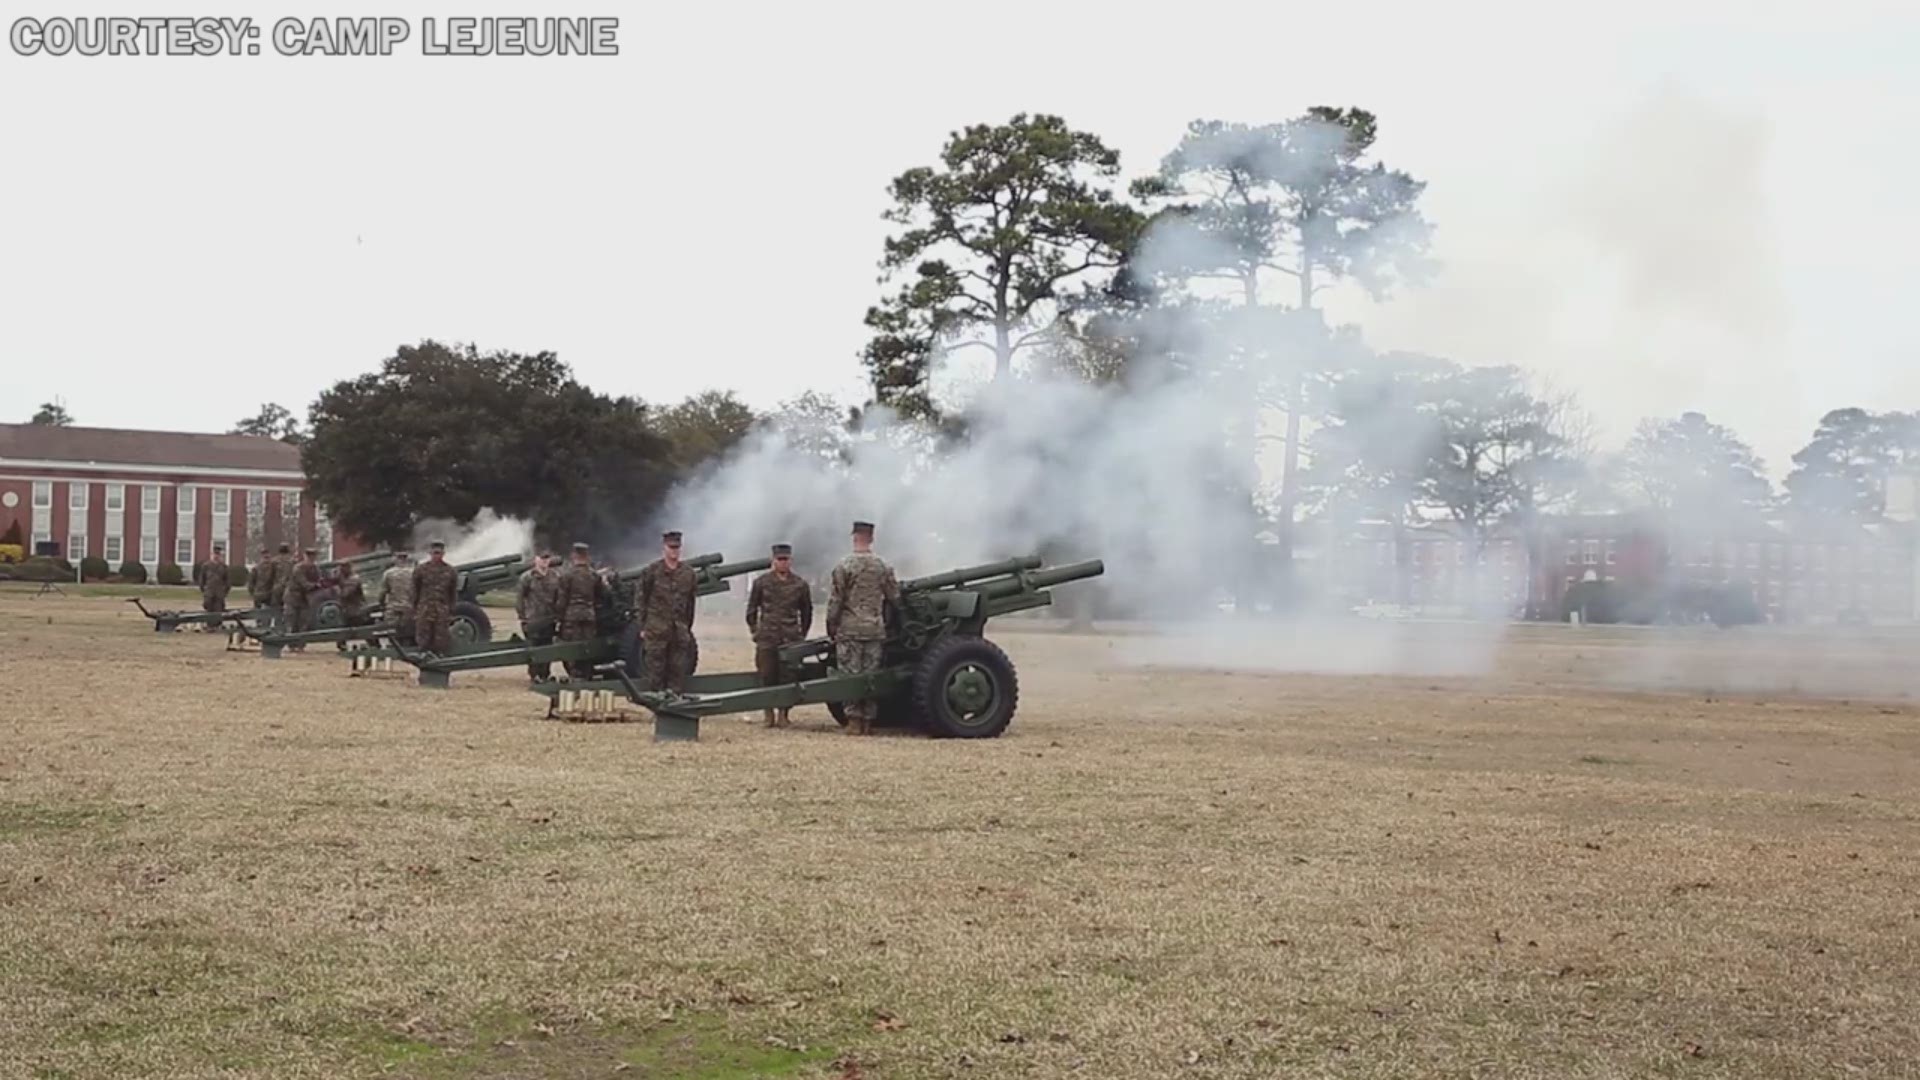 21-Gun Salute at Camp Lejeune in Honor of Presidents Day